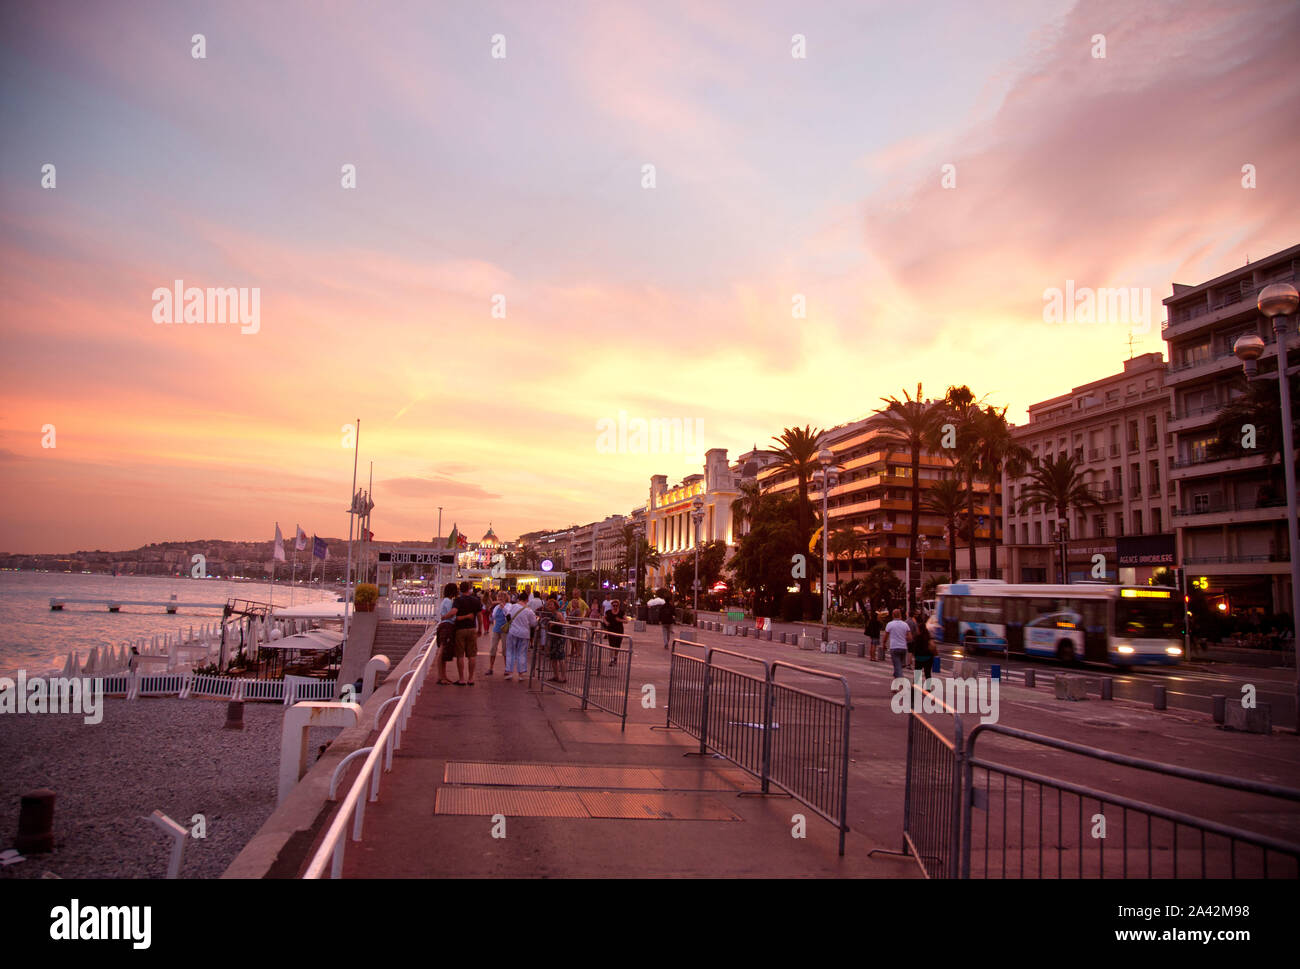 Staden Nice på den franska rivieran. Solnedgång över Promenade des Anglais.Foto Jeppe Gustafsson Stock Photo